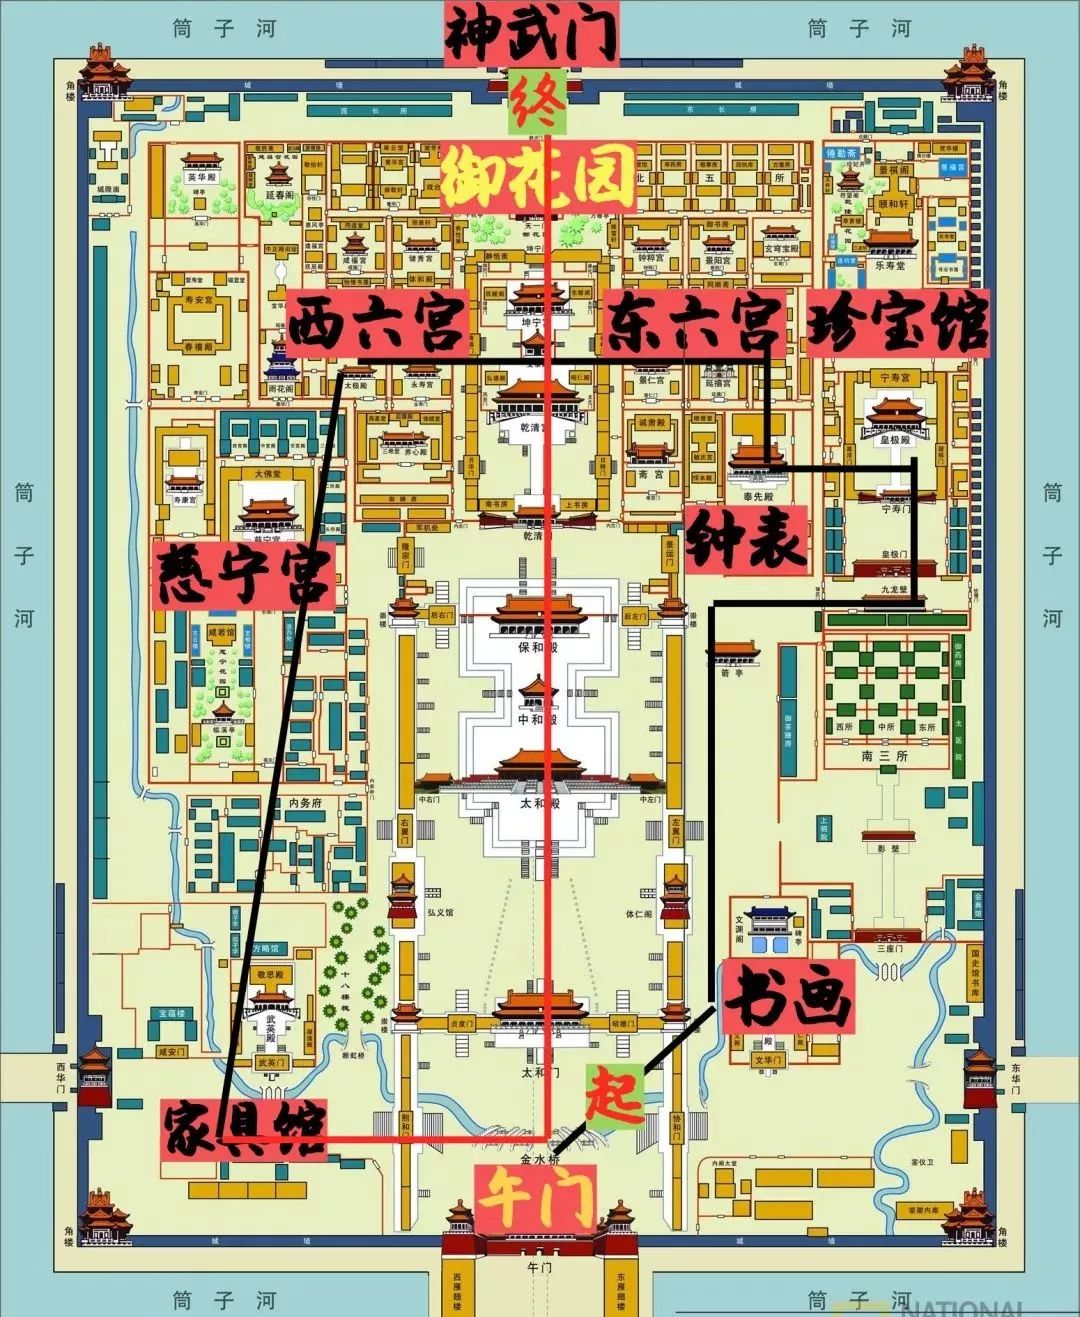 北京故宫游览图简笔画图片